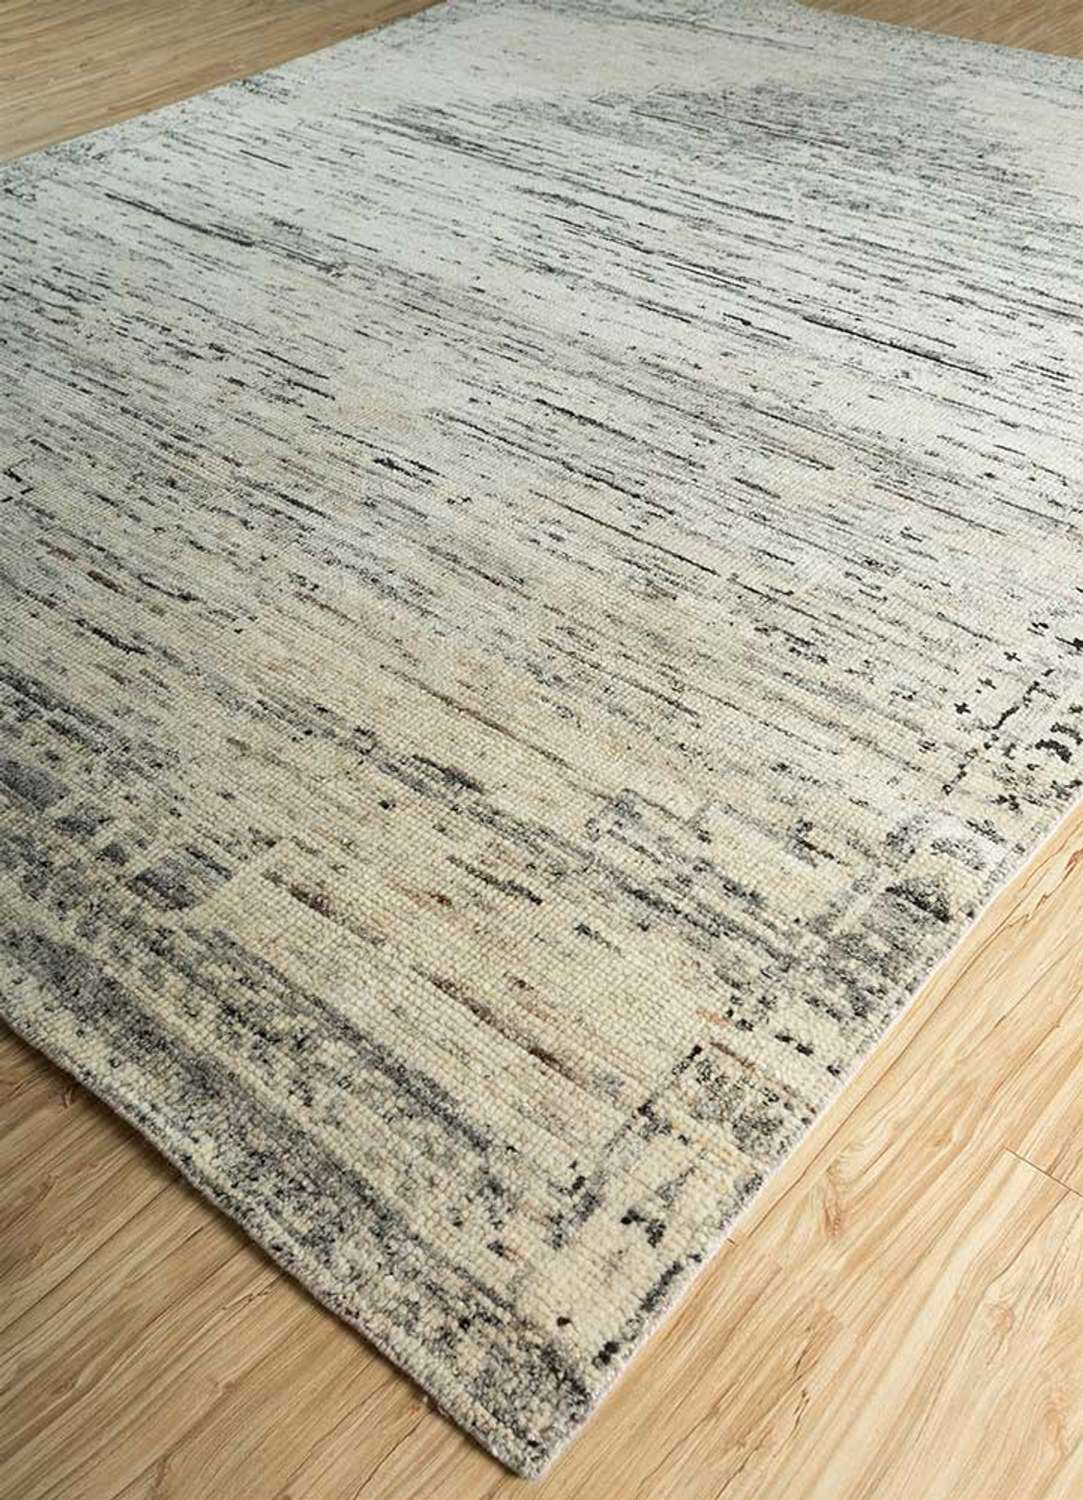 Vintage koberec - 300 x 240 cm - pískový